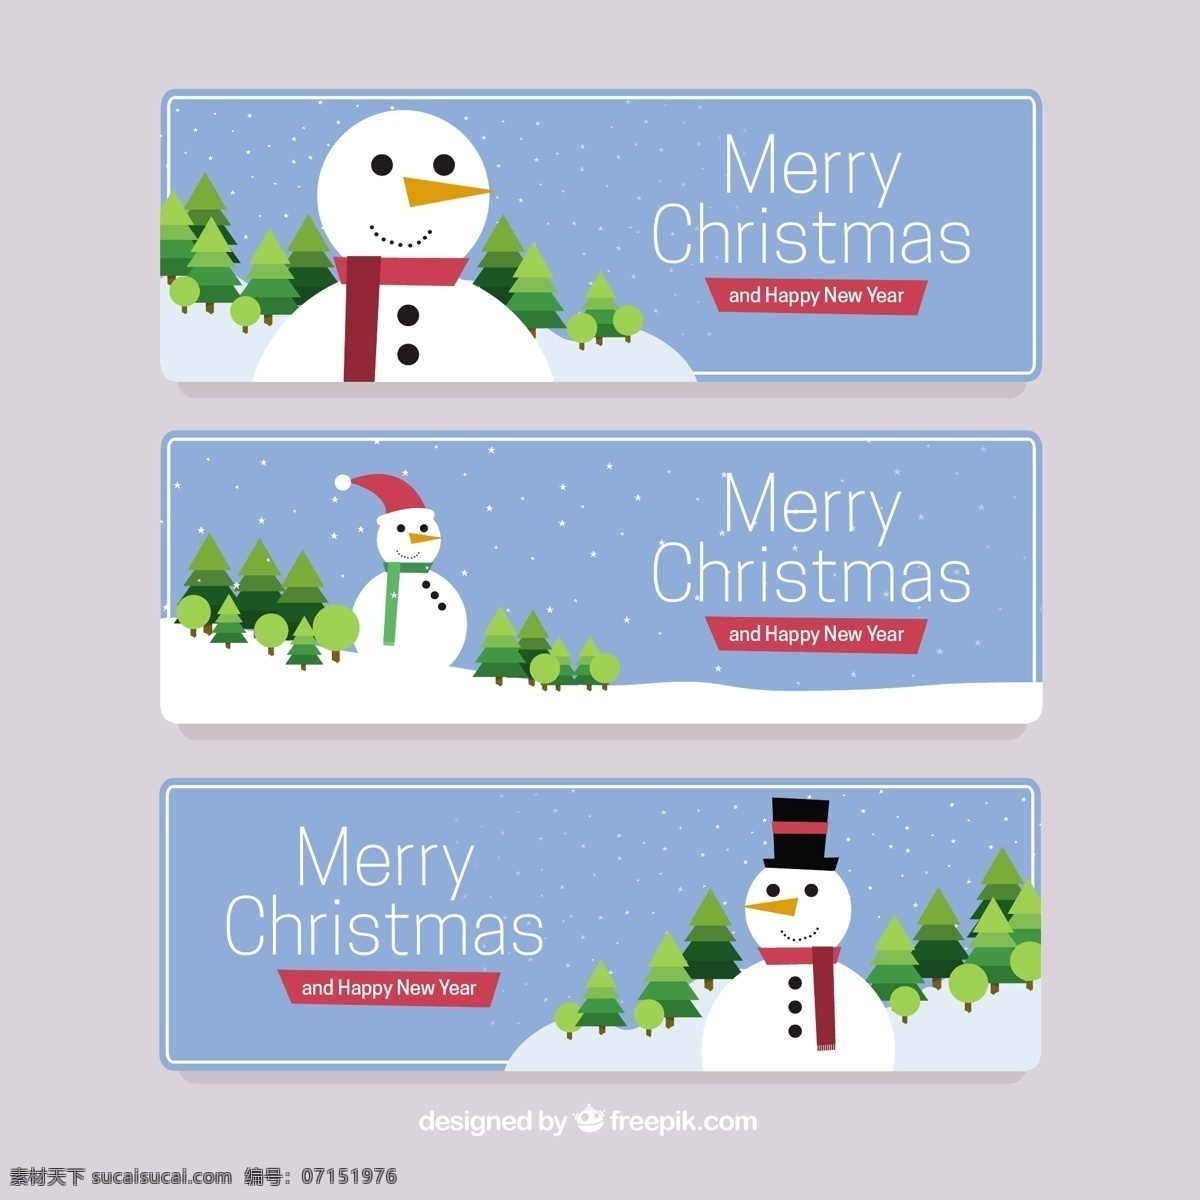 雪人横幅收藏 旗帜 圣诞节 下雪了 圣诞快乐 冬天 横幅 快乐 庆祝的节日 堆雪人 节日快乐 季节 节日 十二月 收集 雪 蓝色